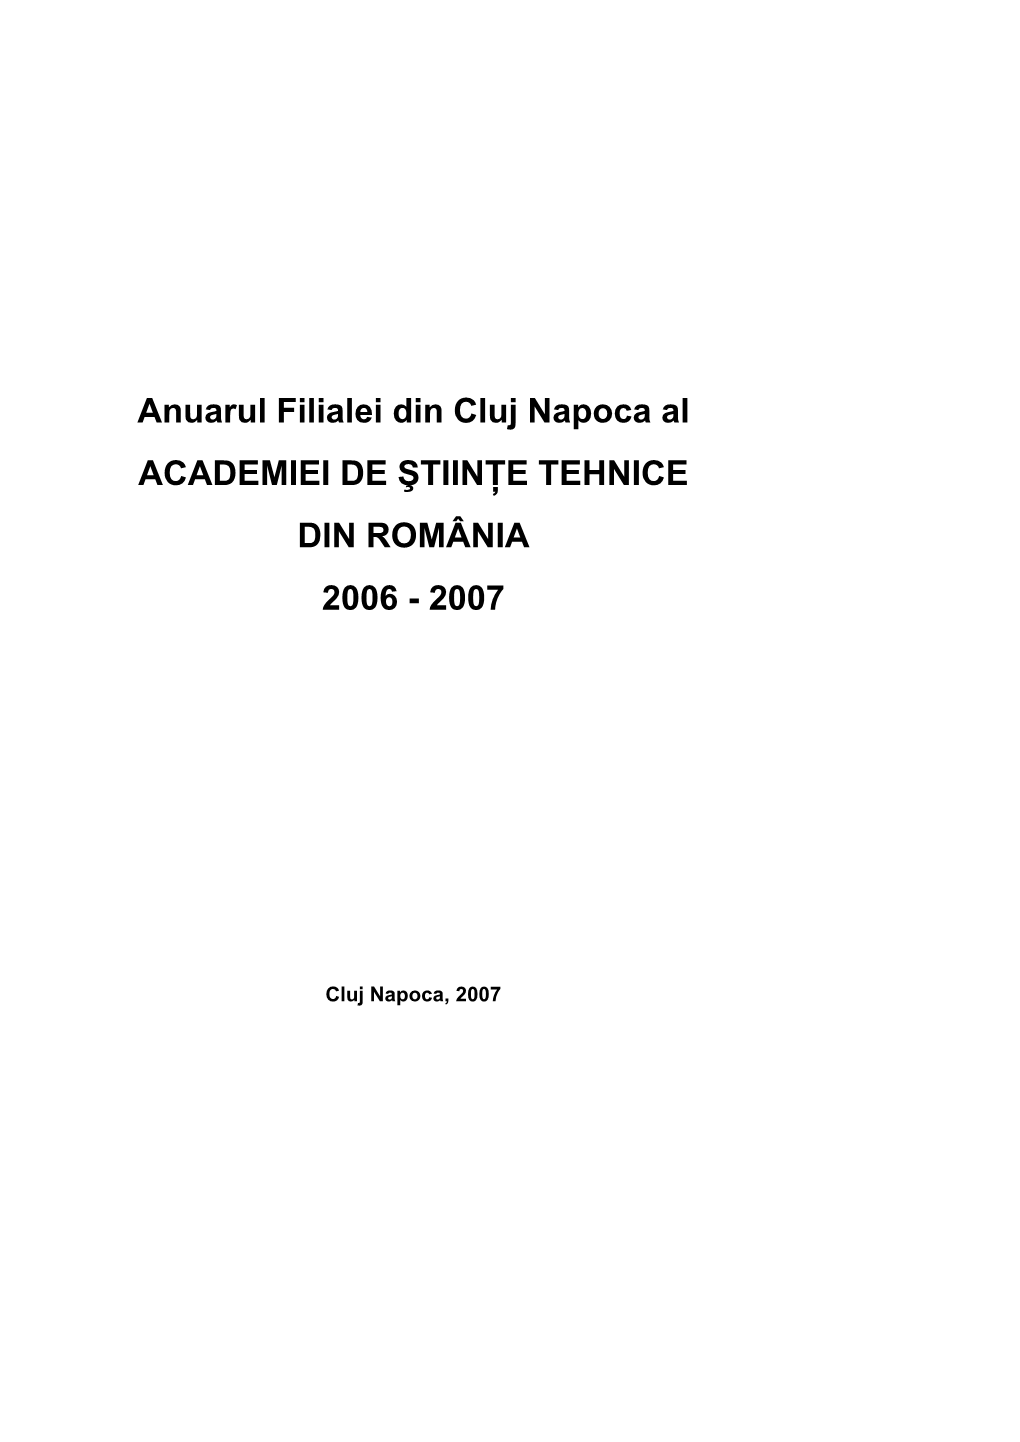 Anuarul Filialei Din Cluj Napoca Al ACADEMIEI DE ŞTIINŢE TEHNICE DIN ROMÂNIA 2006 - 2007